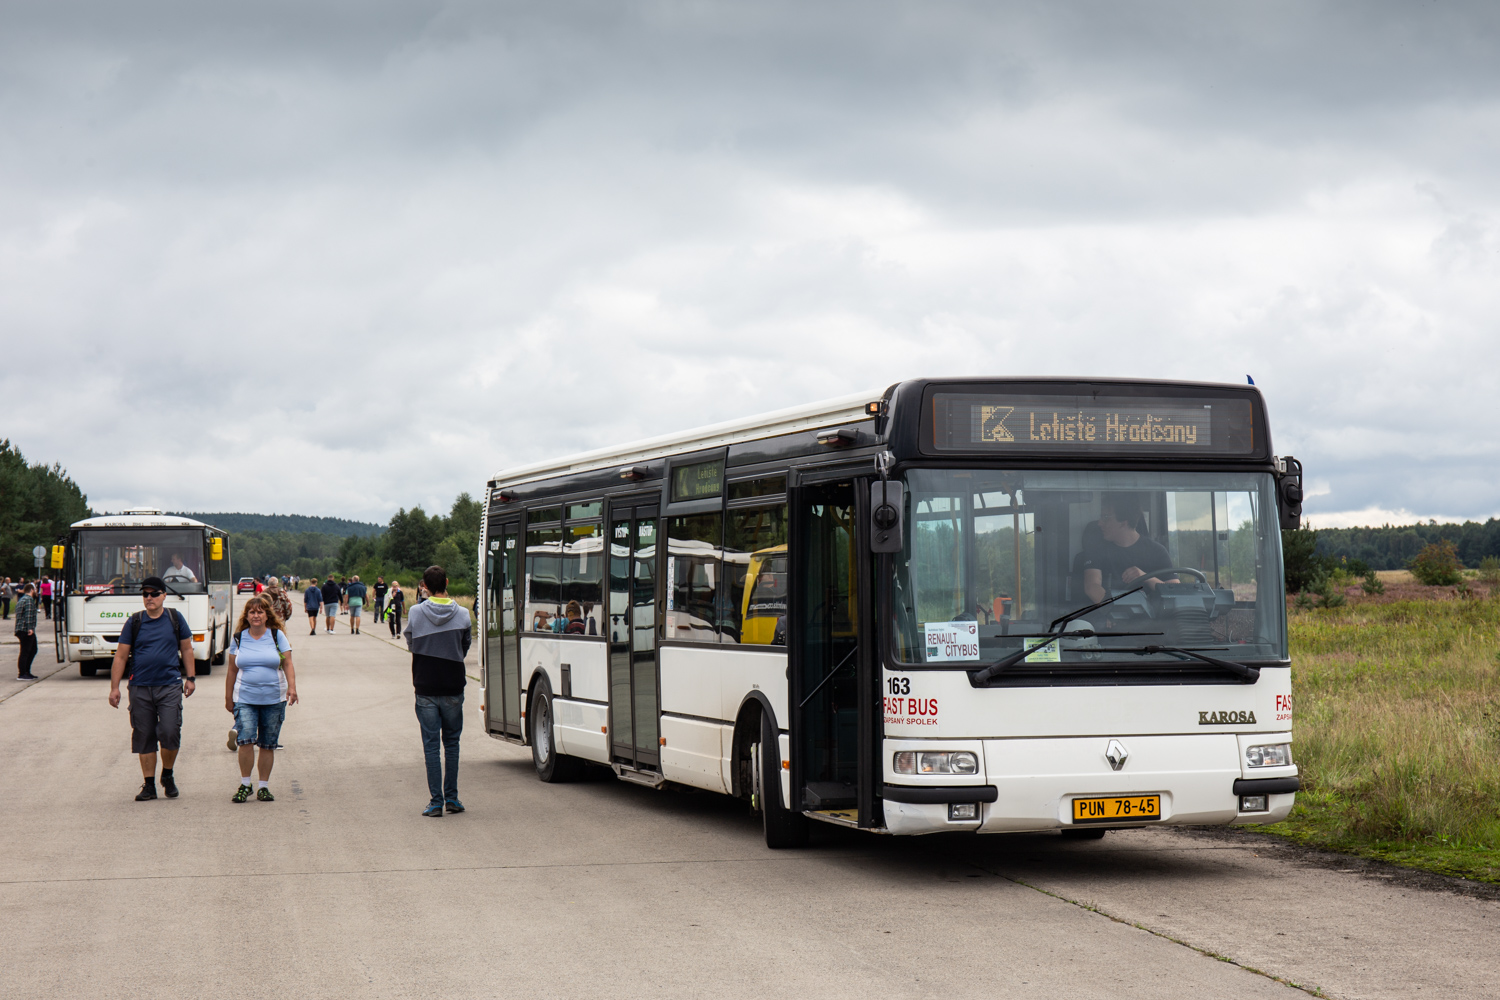 Karosa Citybus 12M #PUN 78-45